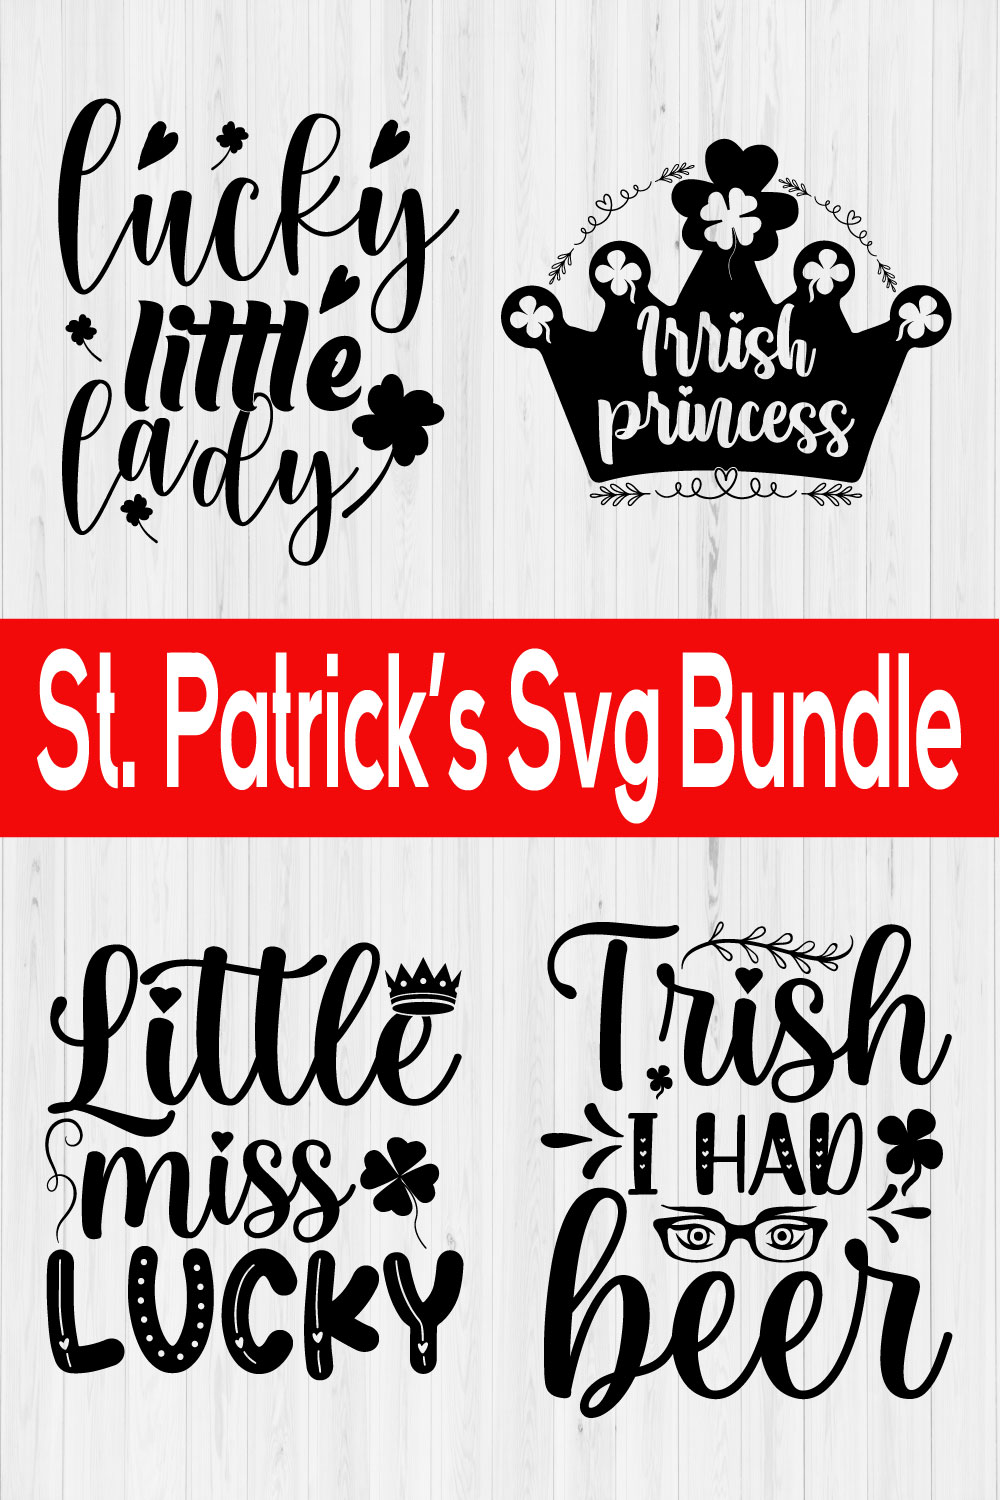 St Patrick's Svg Bundle Vol1 pinterest preview image.